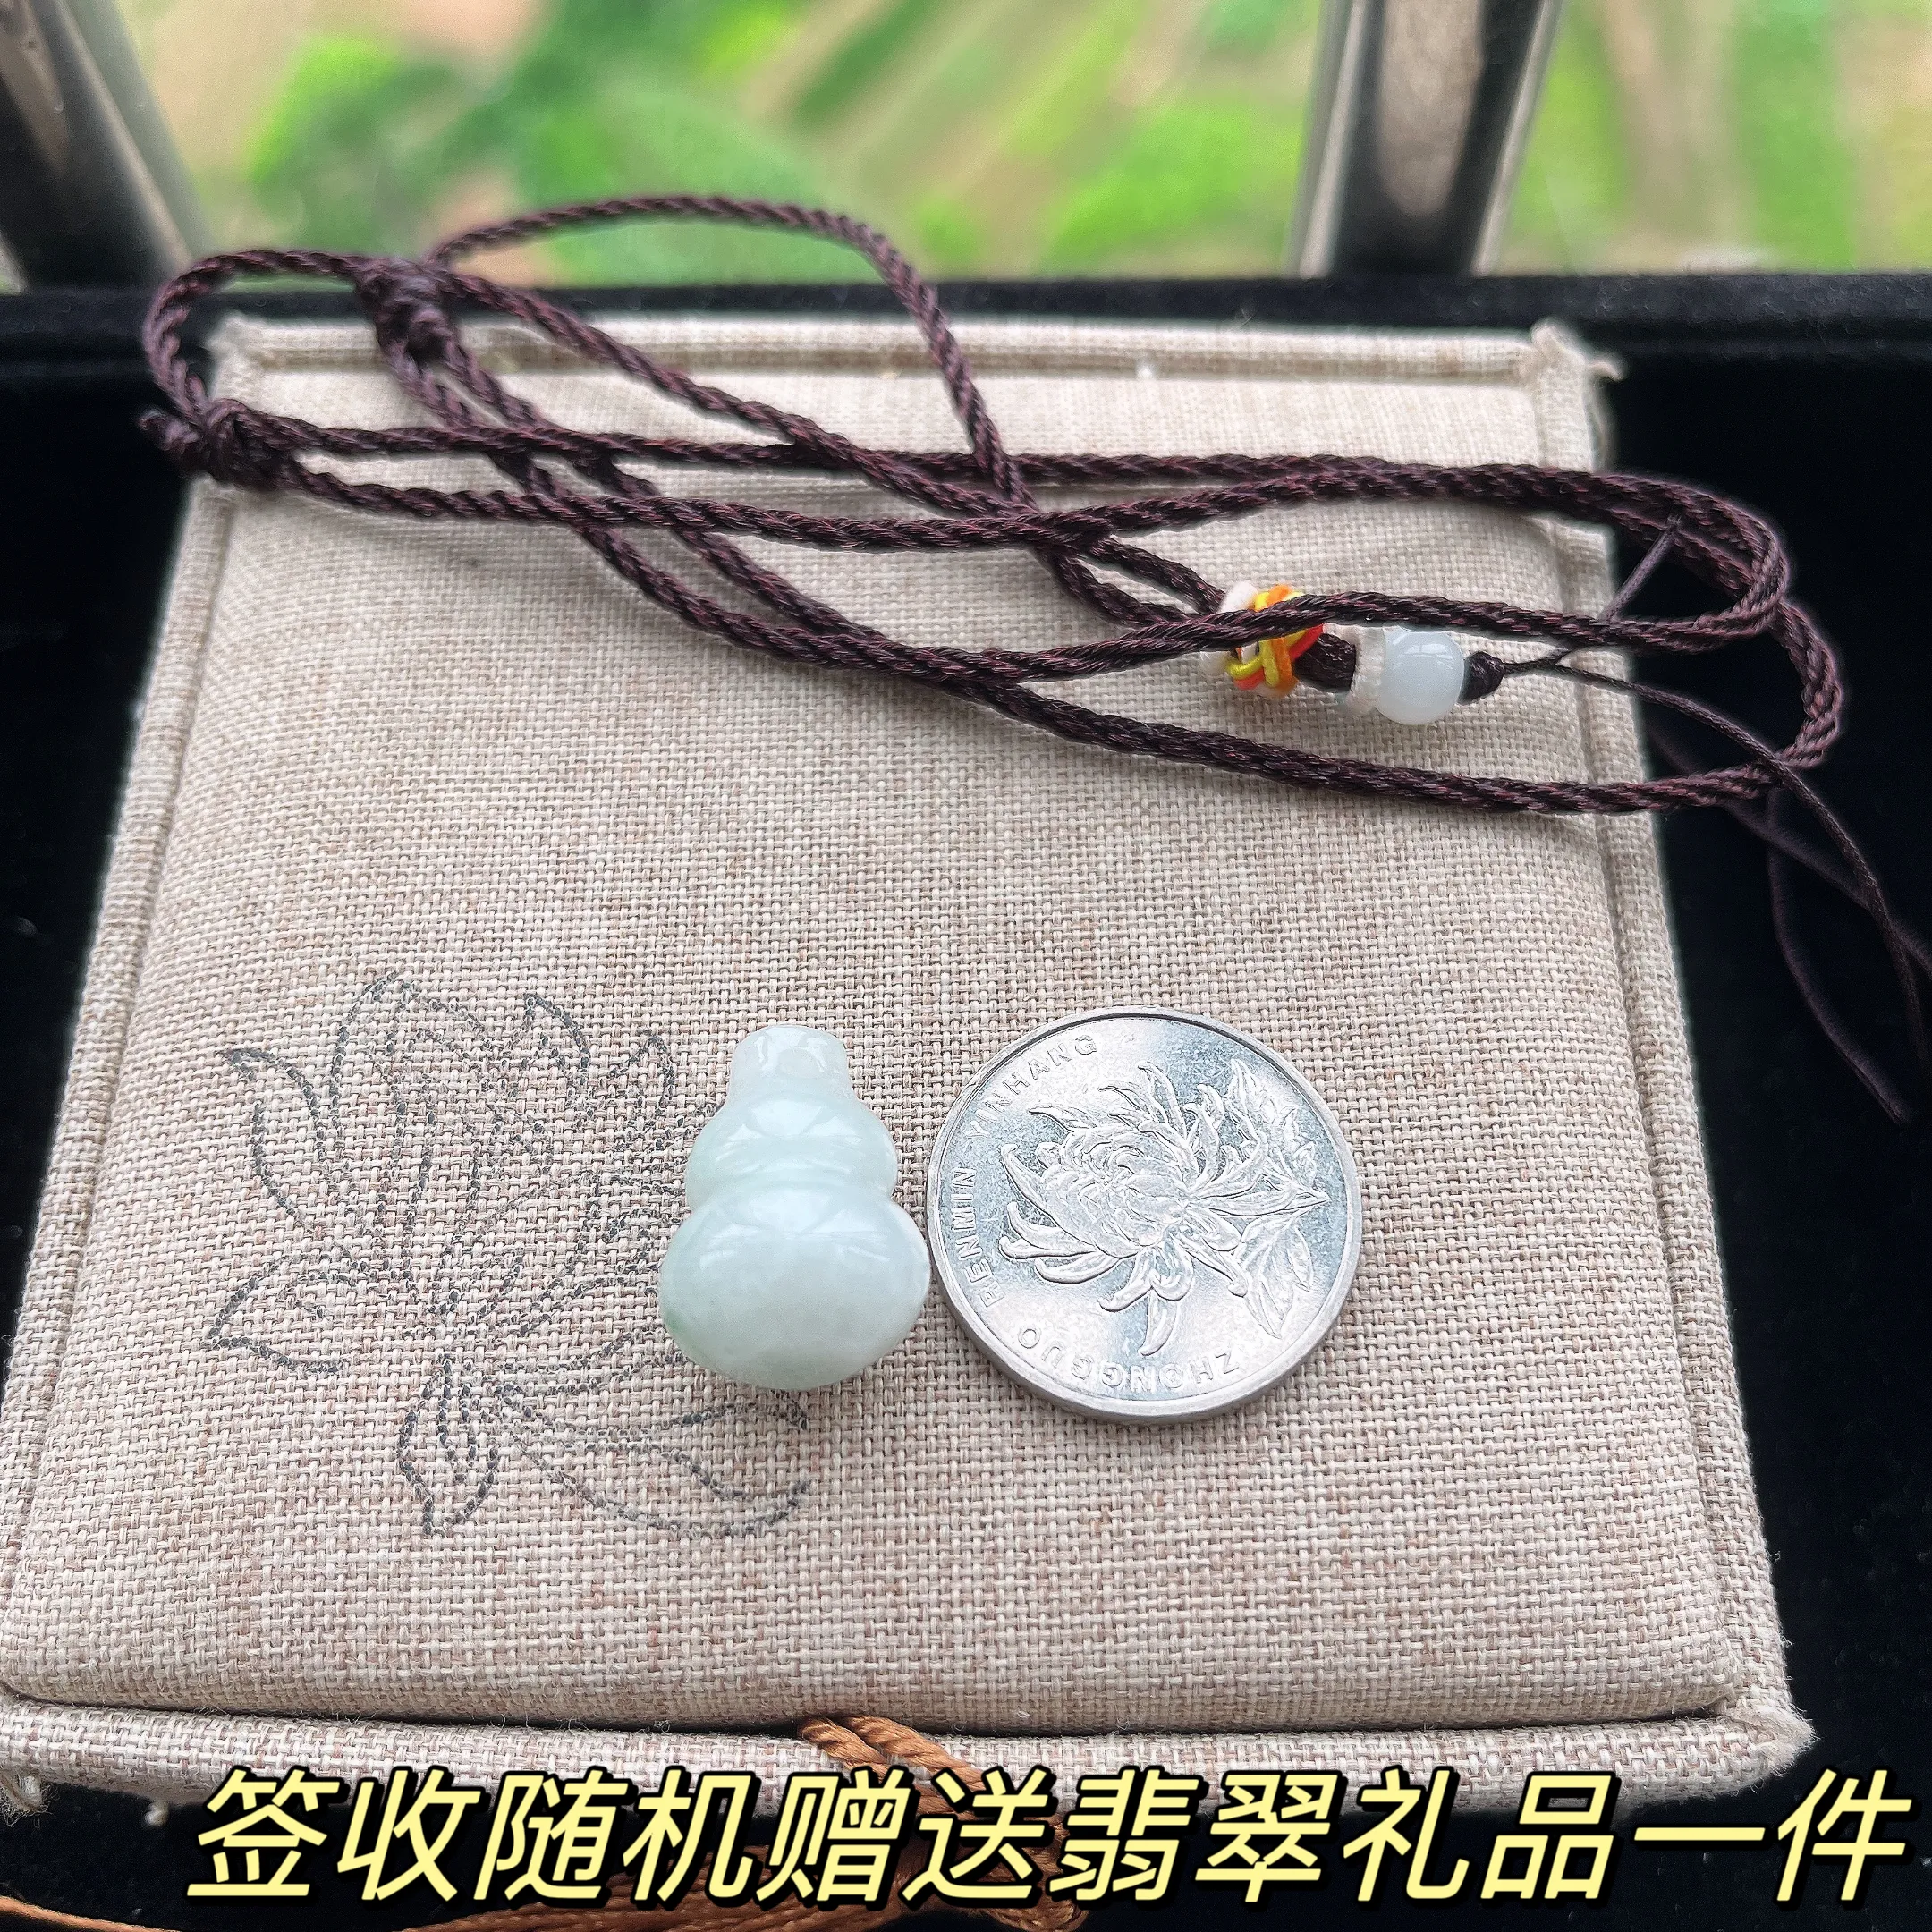 天然A货翡翠小米珠项链200颗，尺寸 3.5，重: 12.10g
4月17日